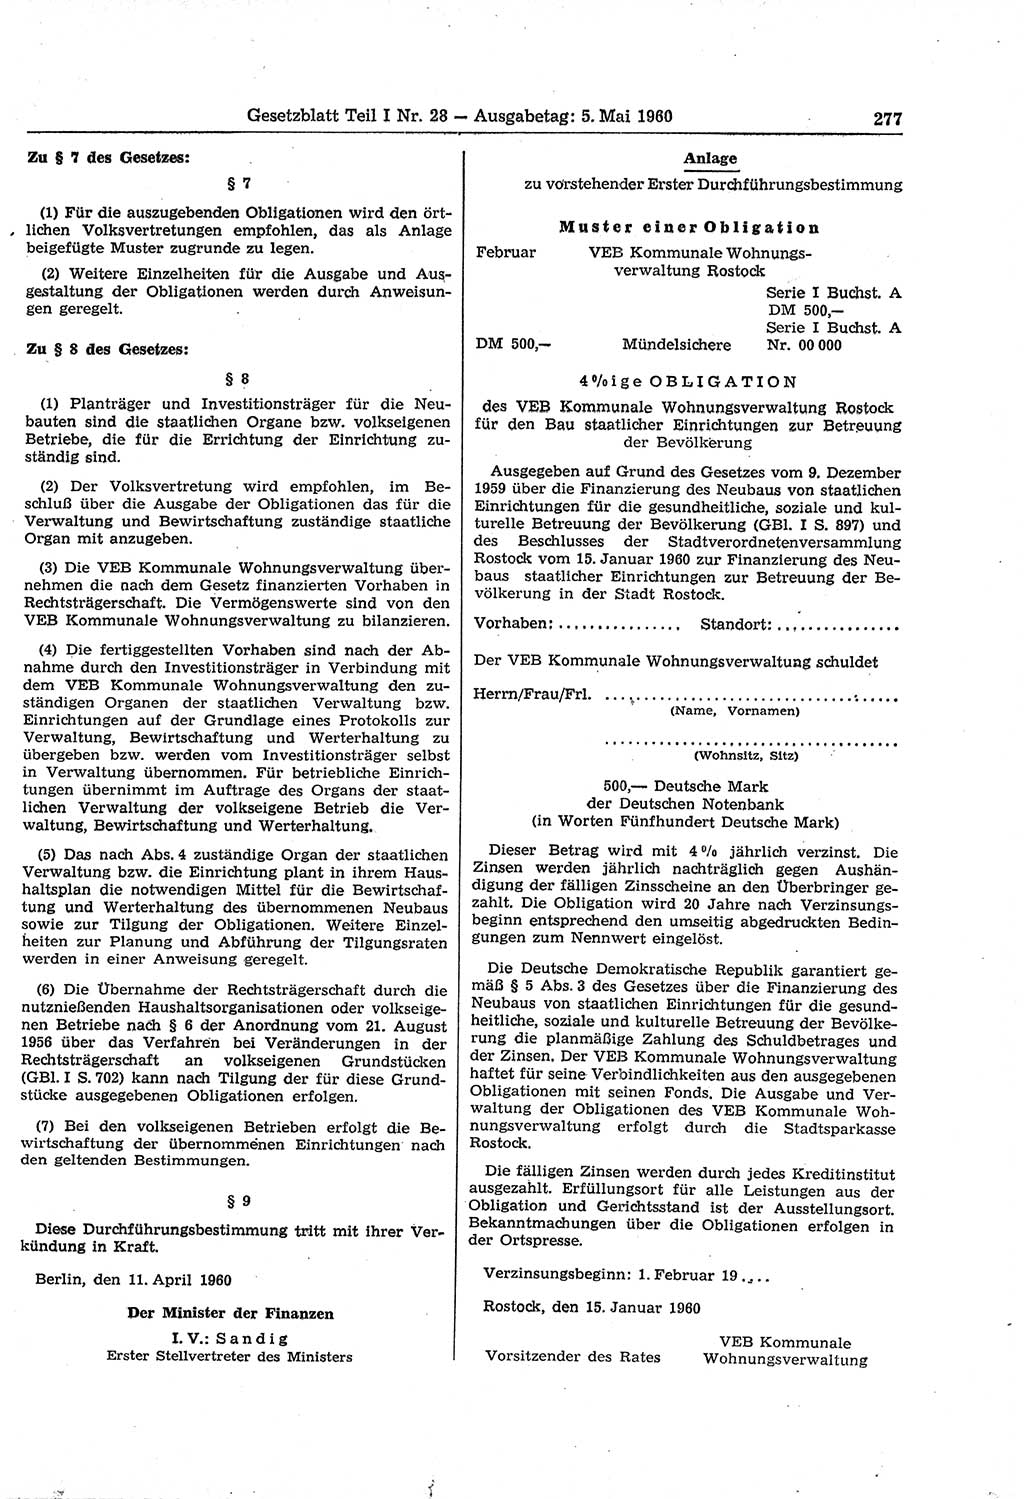 Gesetzblatt (GBl.) der Deutschen Demokratischen Republik (DDR) Teil Ⅰ 1960, Seite 277 (GBl. DDR Ⅰ 1960, S. 277)